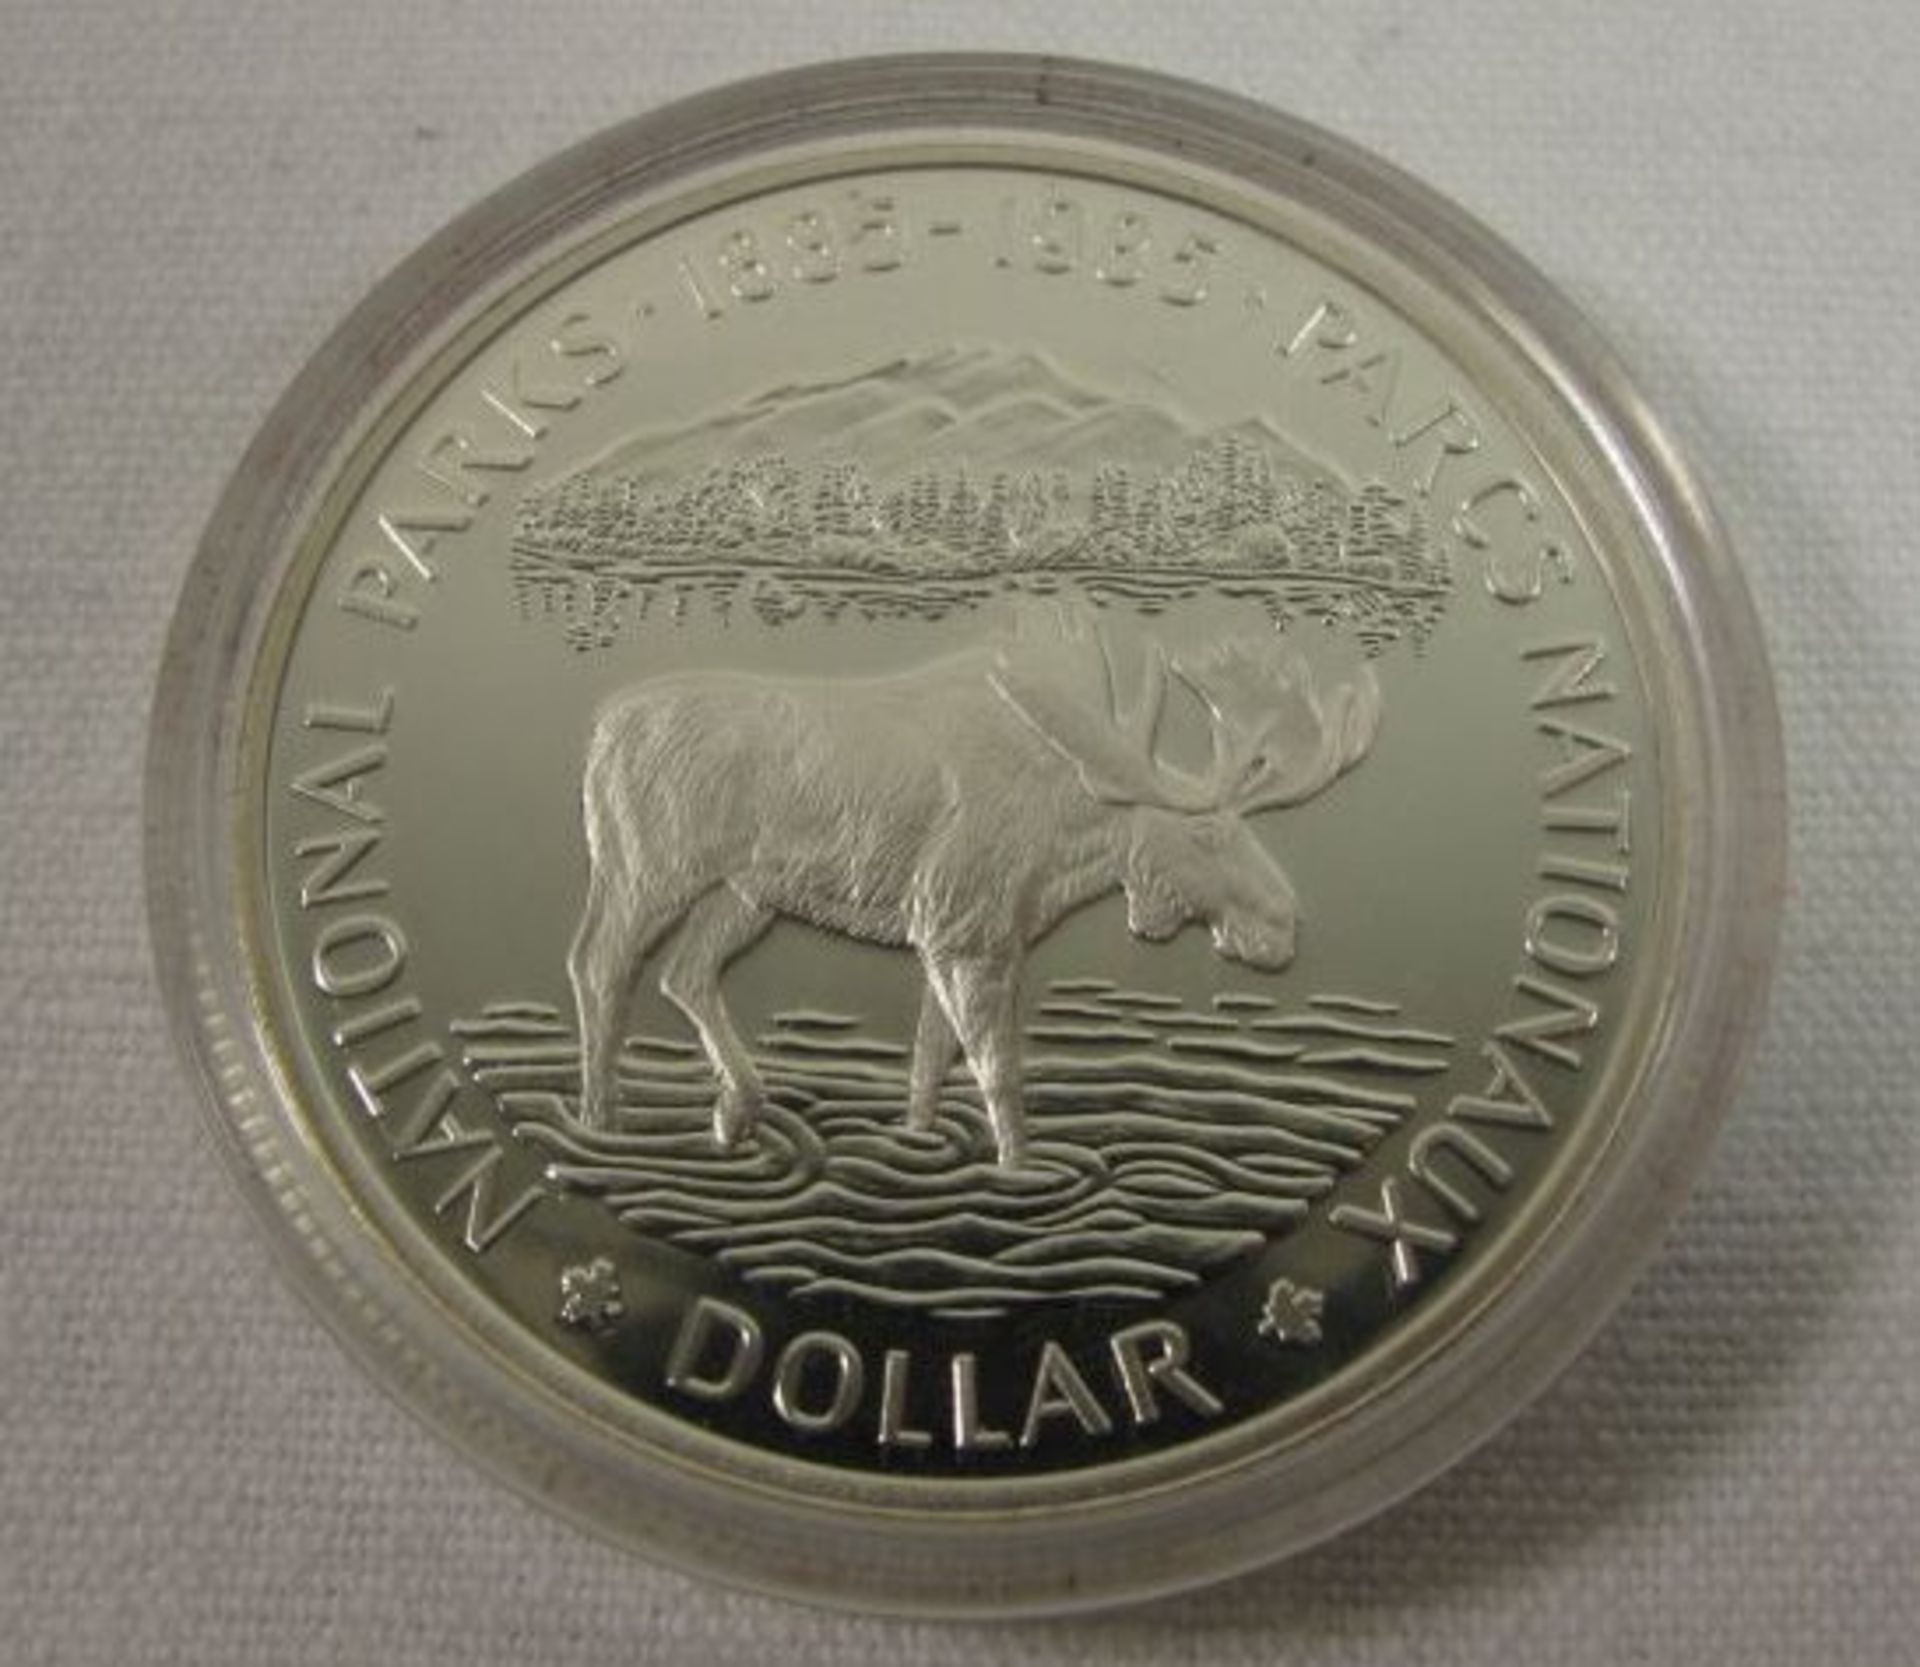 Münze "Dollar", Canada, 1985, in Kapsel, D-3,5cm. - Bild 2 aus 2